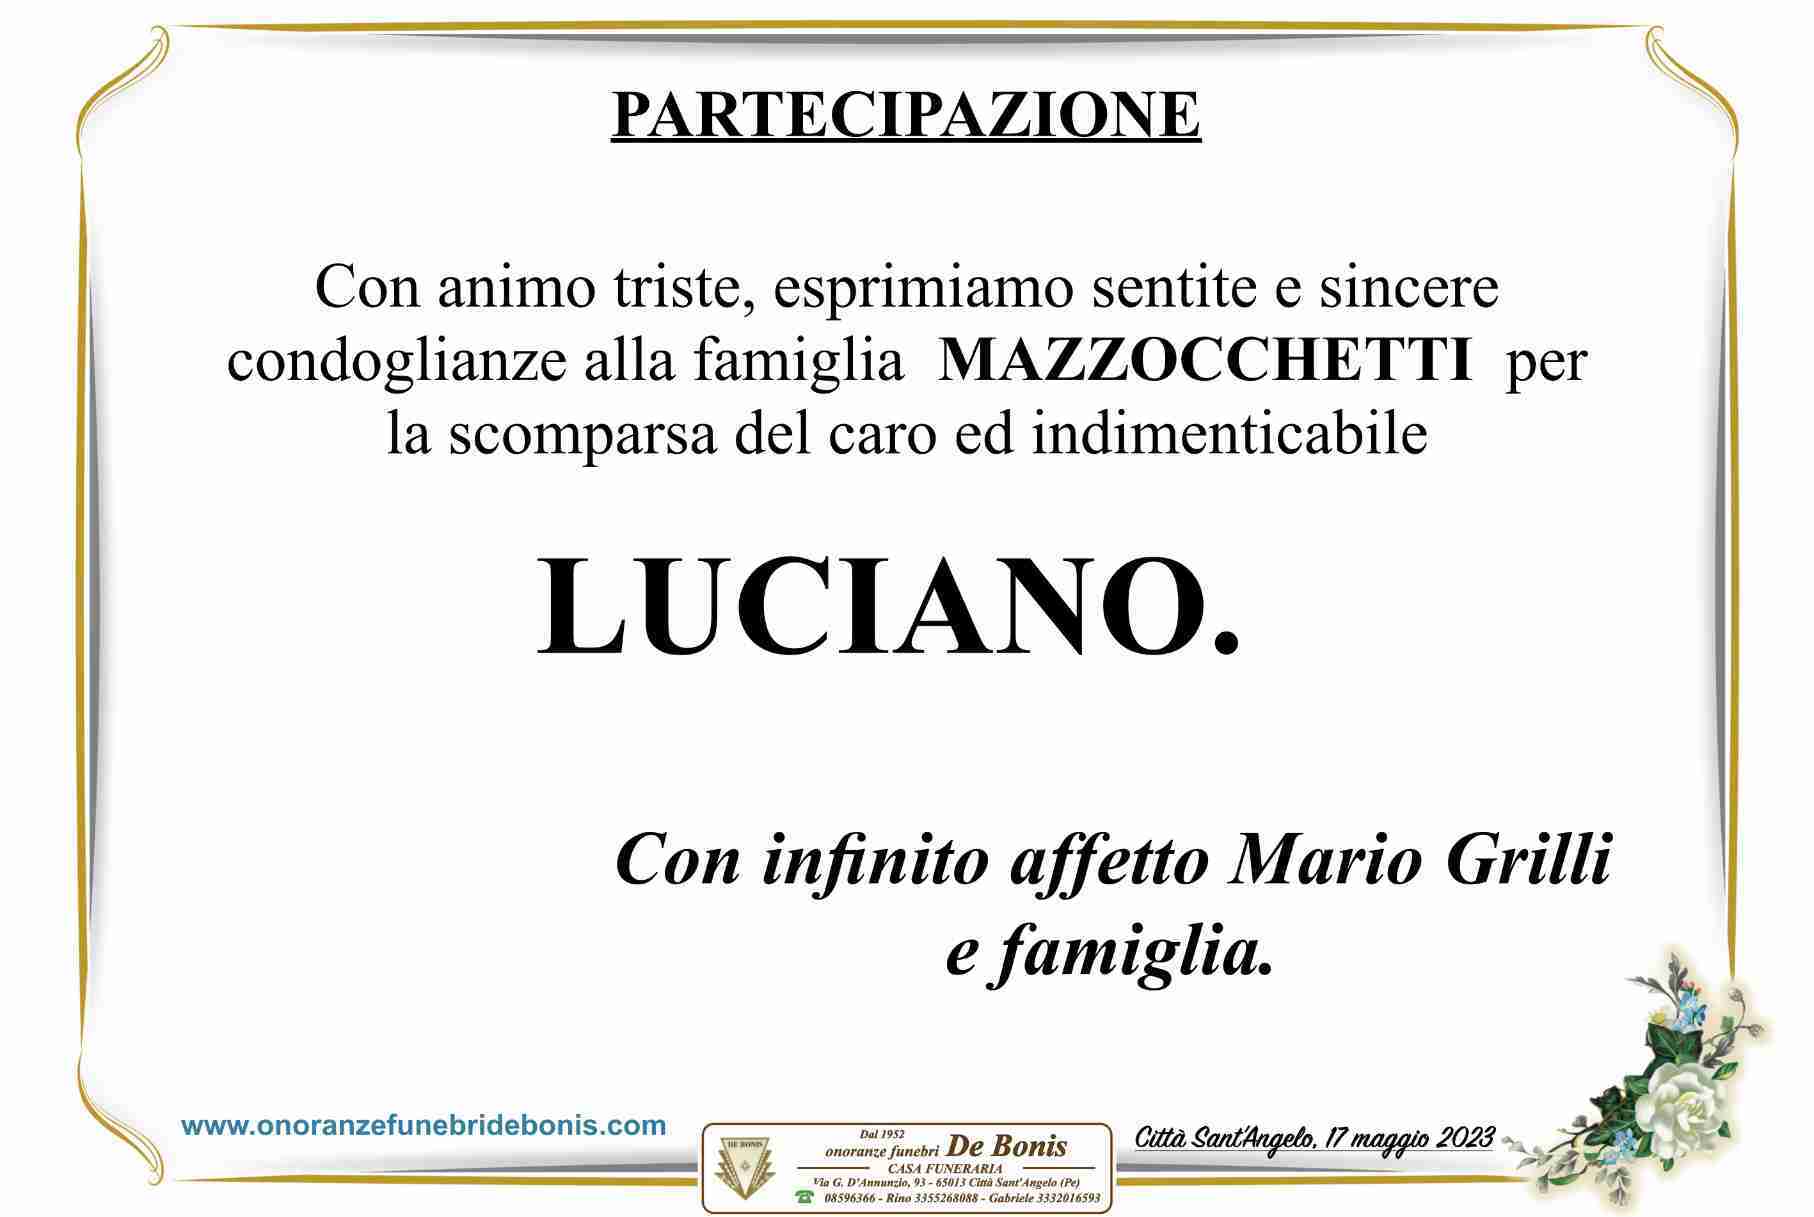 Luciano Mazzocchetti